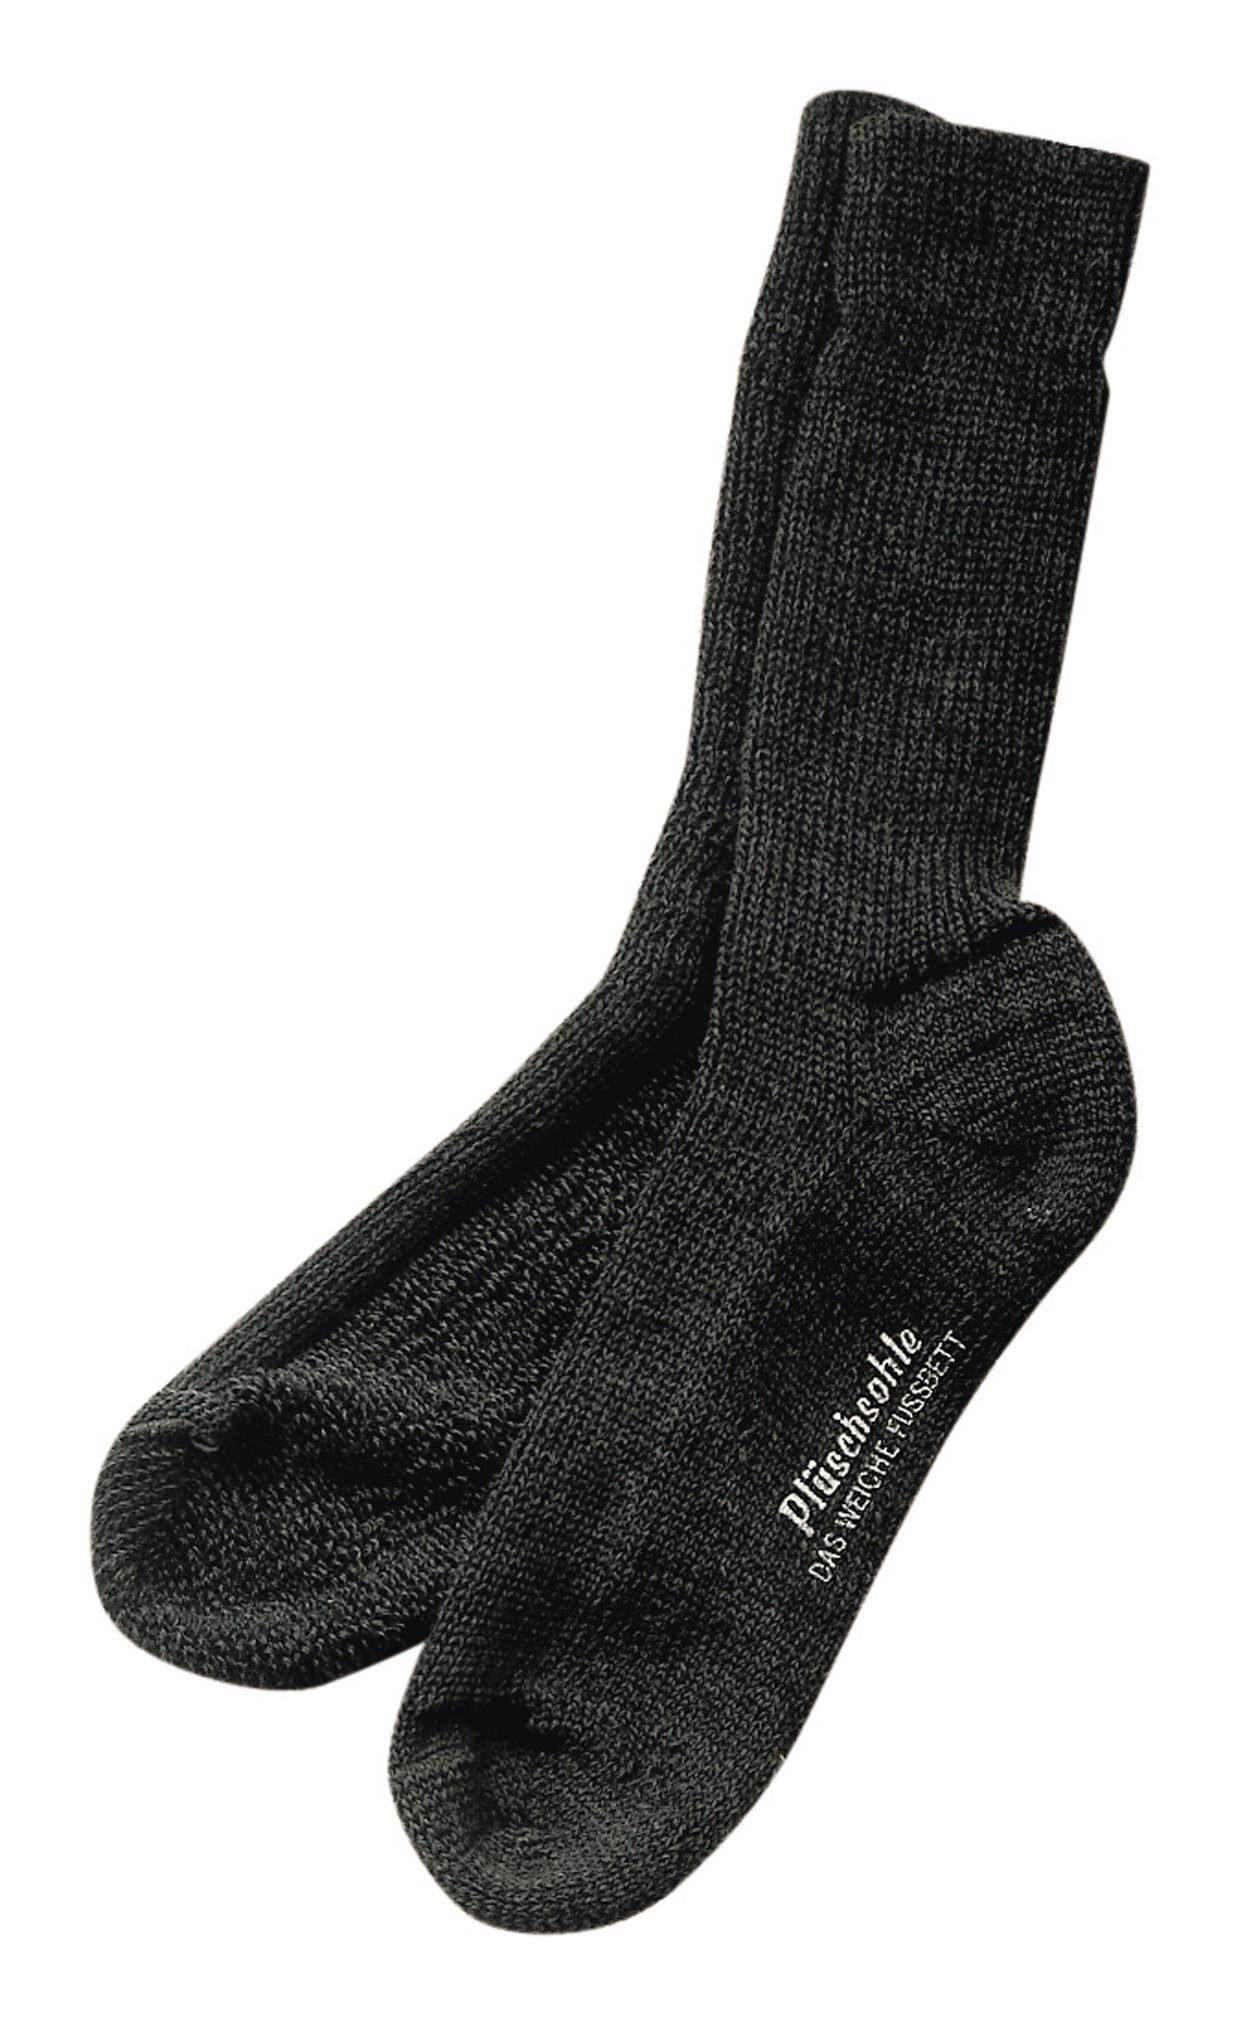 fortis Socken Gesundheitssocke Größe 41 - 42 anthrazit